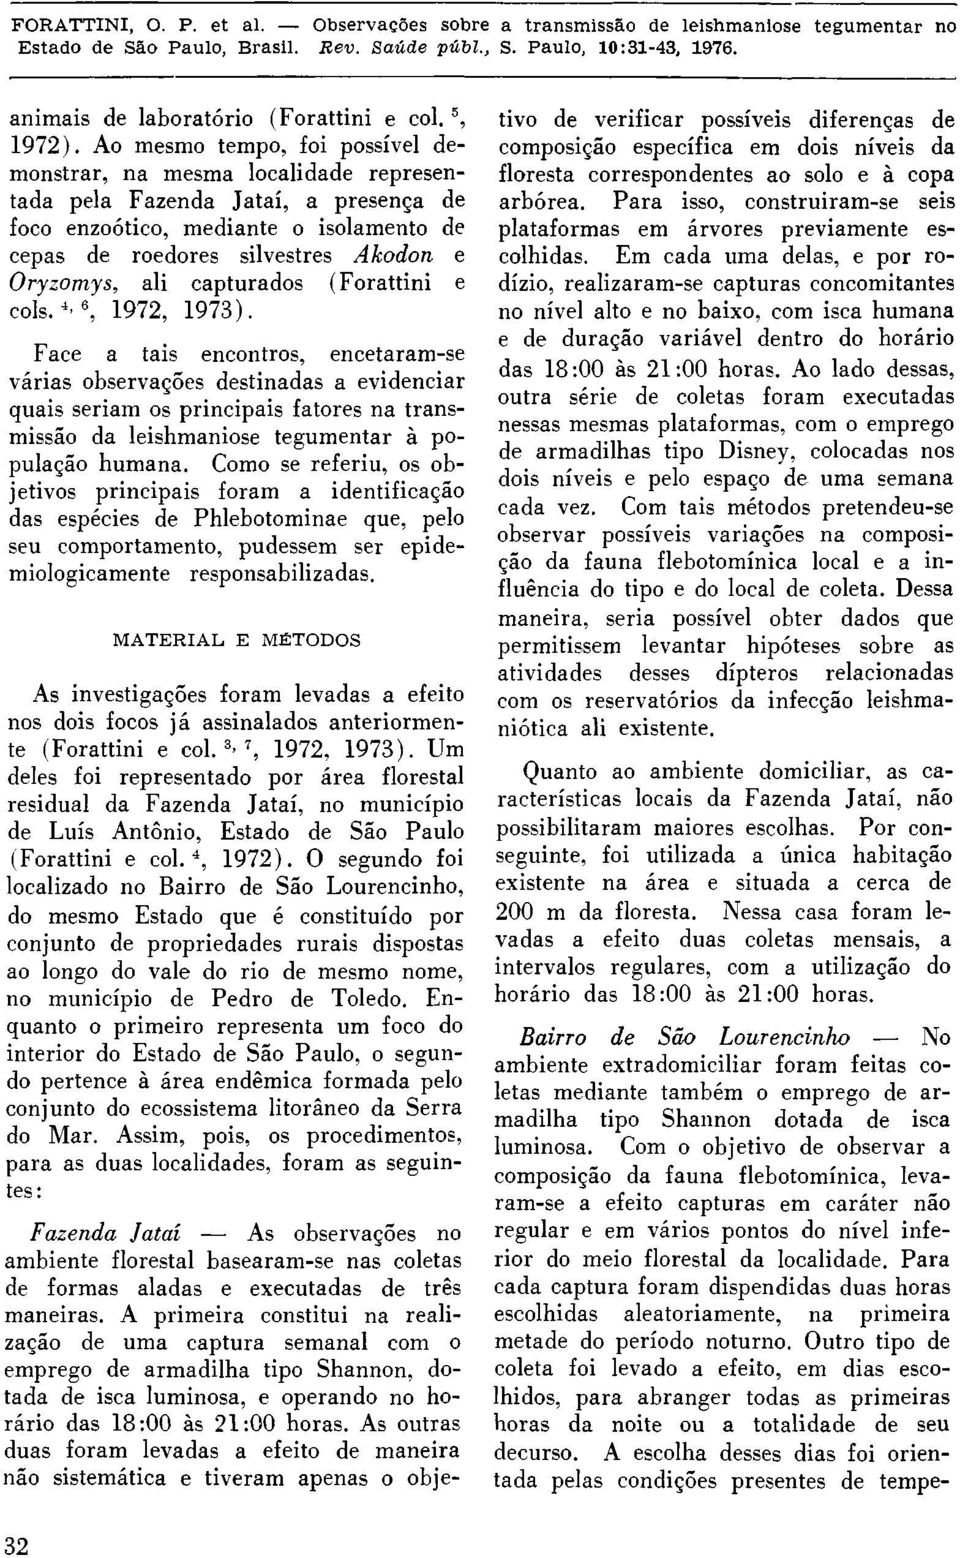 ali capturados (Forattini e cols. 4,6, 1972, 1973).